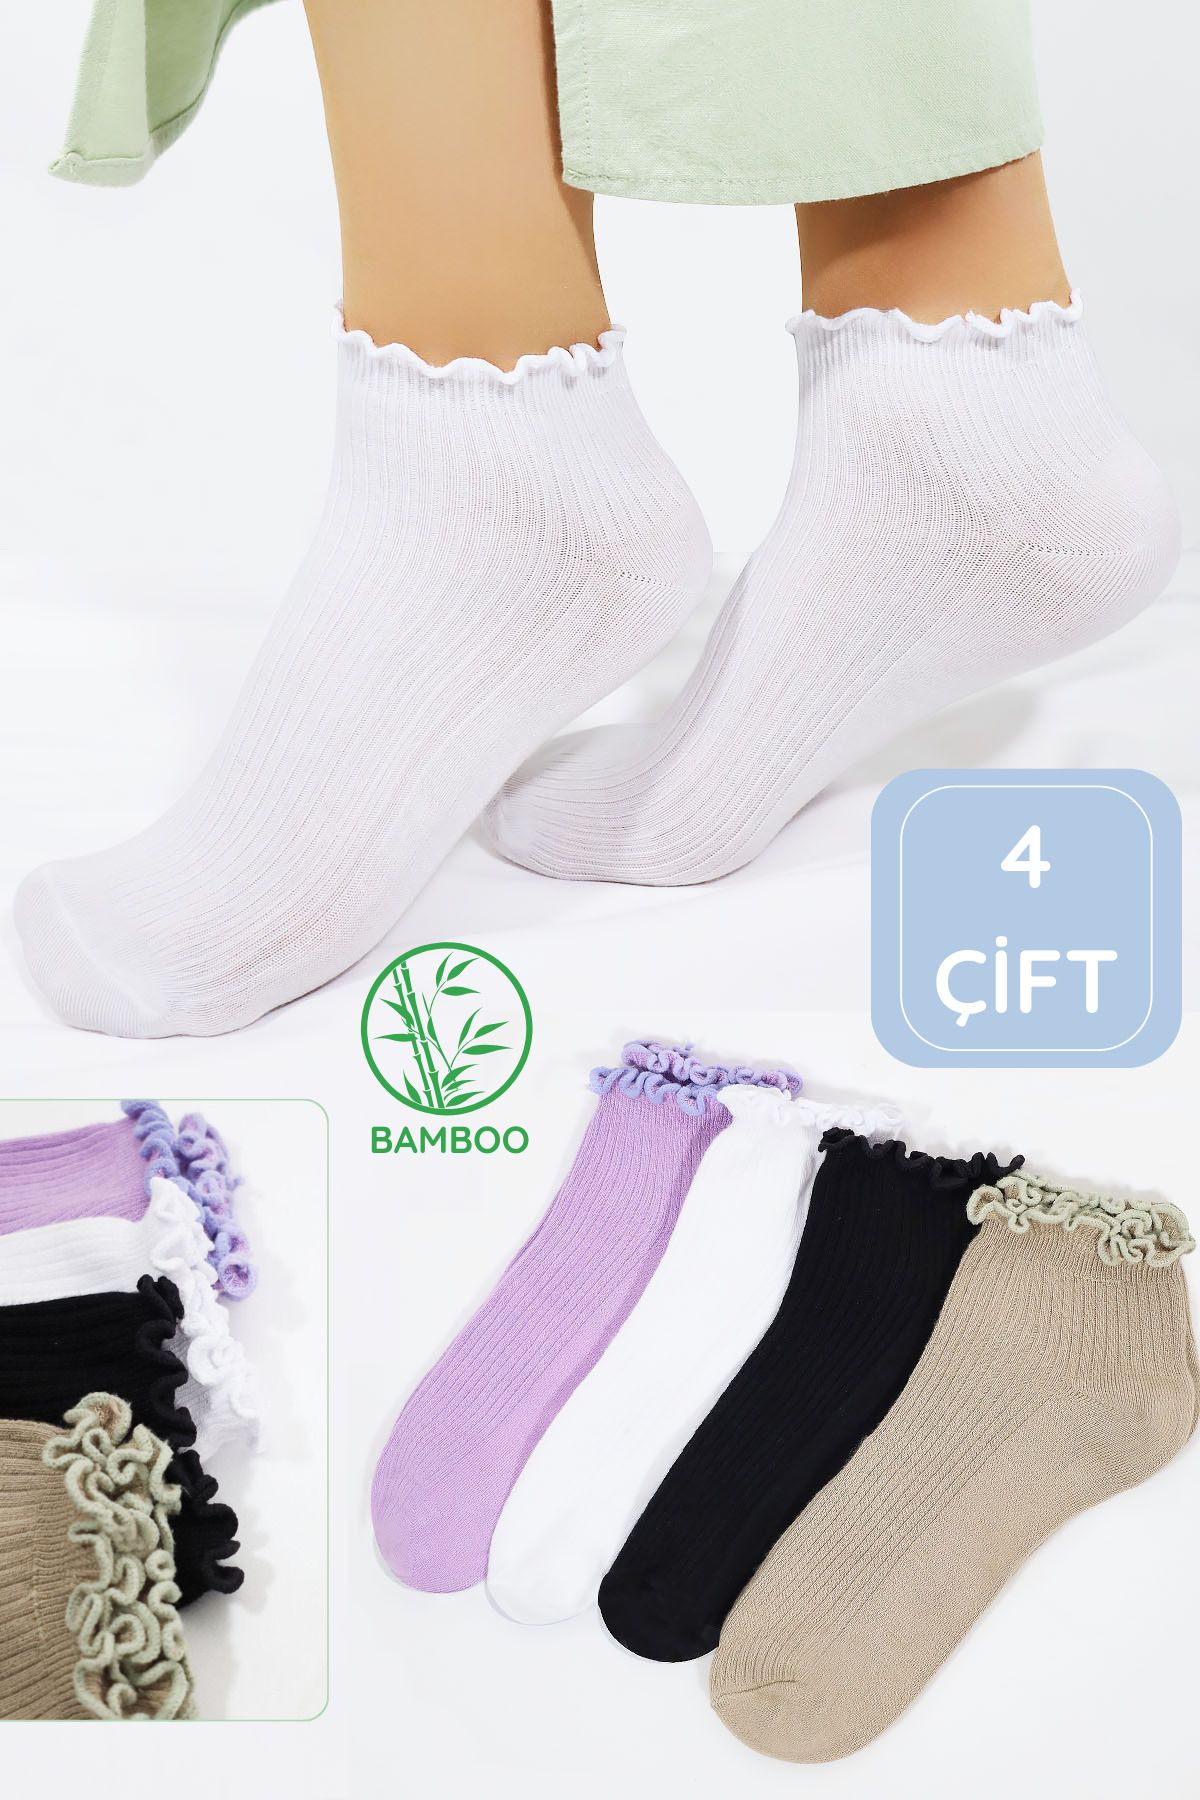 Miss Lana Kadın Bambu Çorap (4 ÇİFT) Renkli Fırfırlı Patik Kadın Çorap